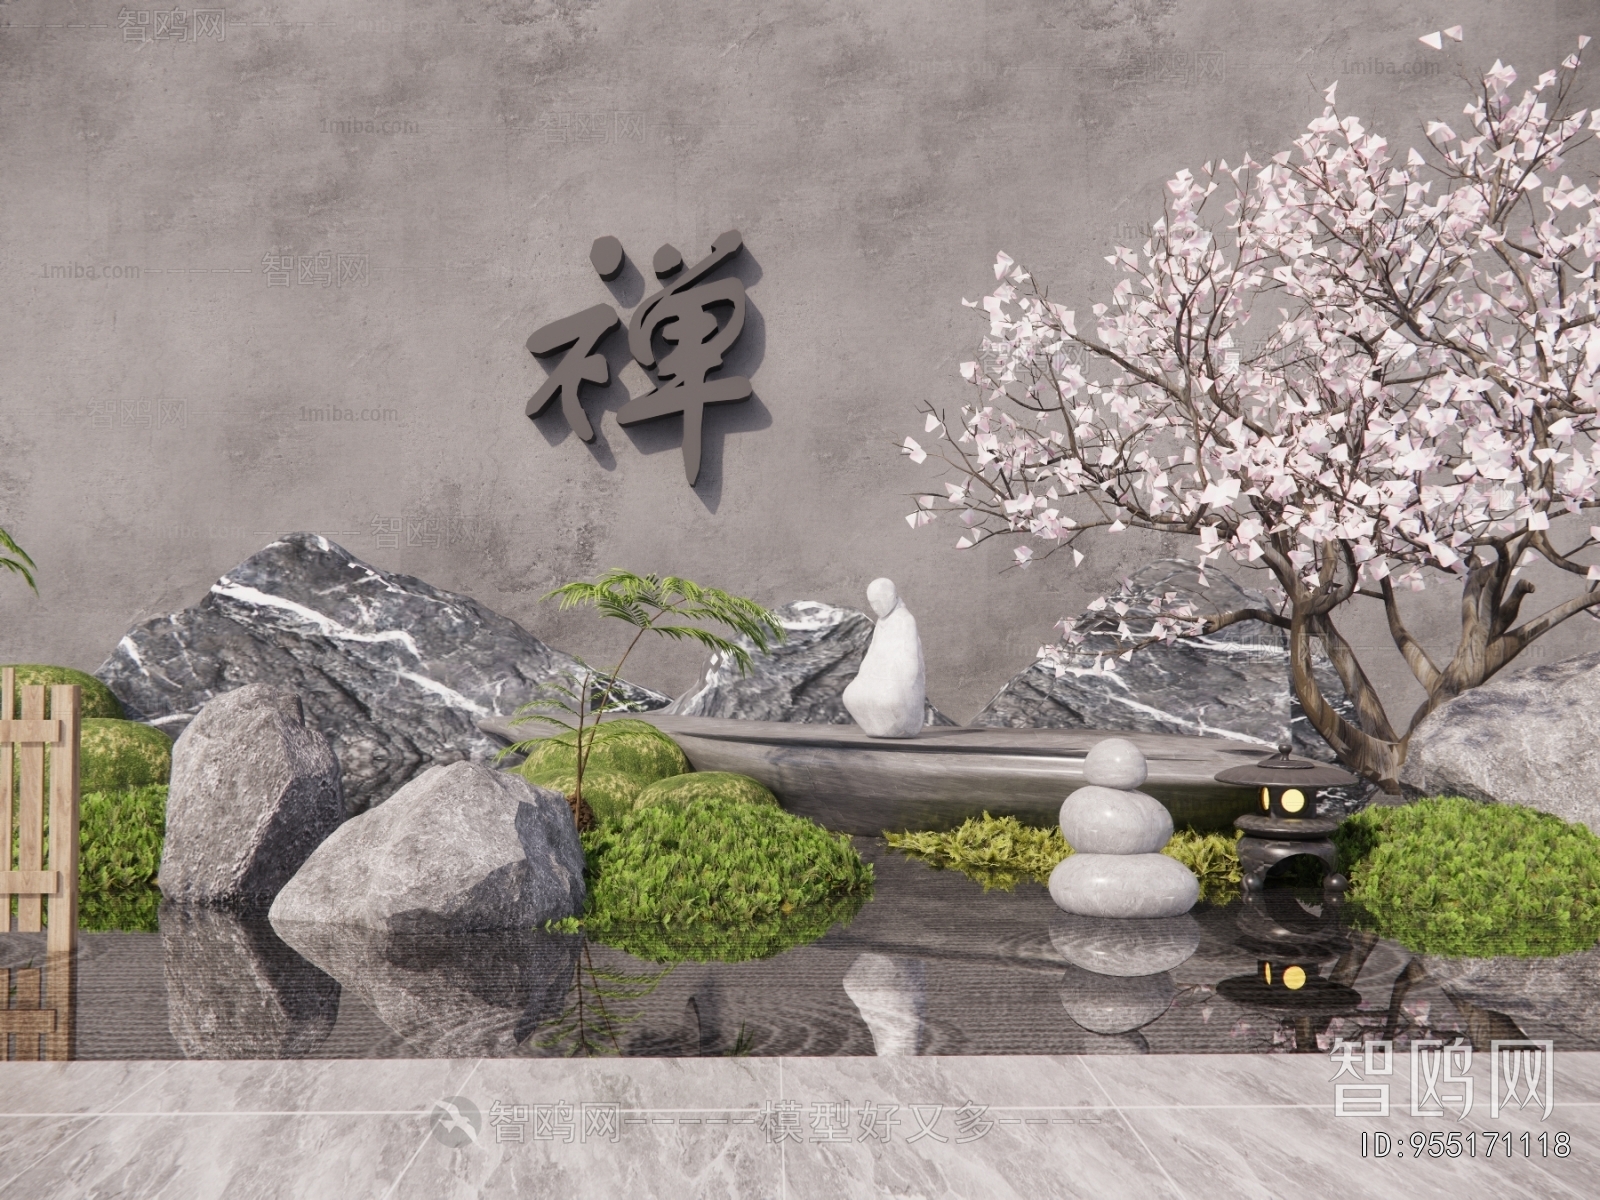 日式庭院景石人物雕塑小品